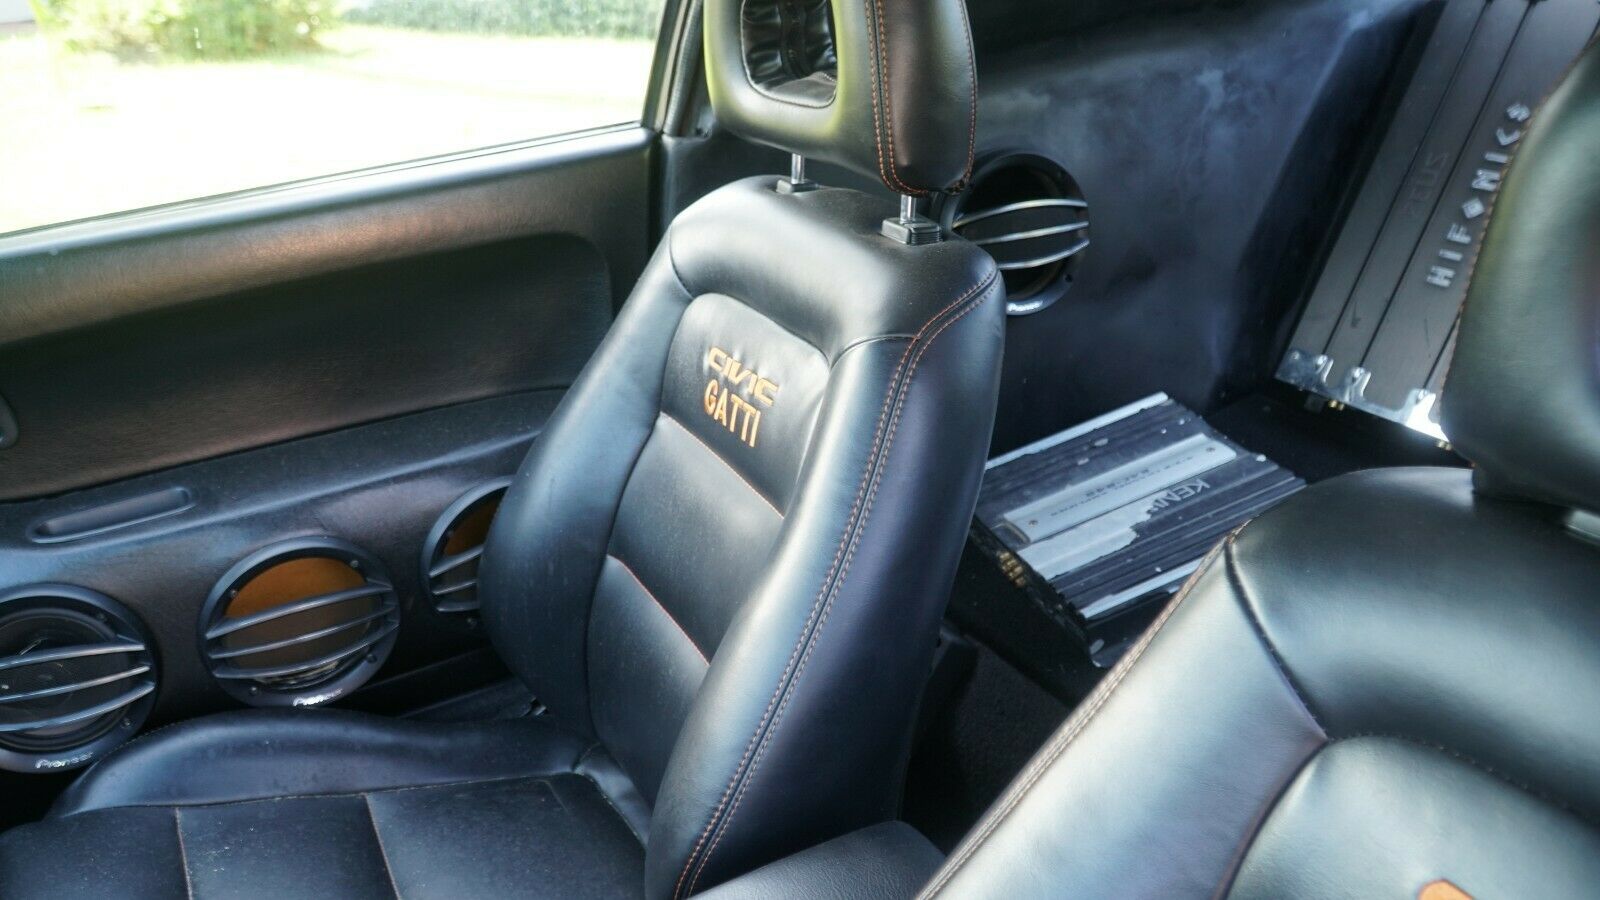 Ghế ngồi bọc da độc đáo với dòng chữ in là sự kết hợp của 2 thương hiệu xe - Civic Gatti.